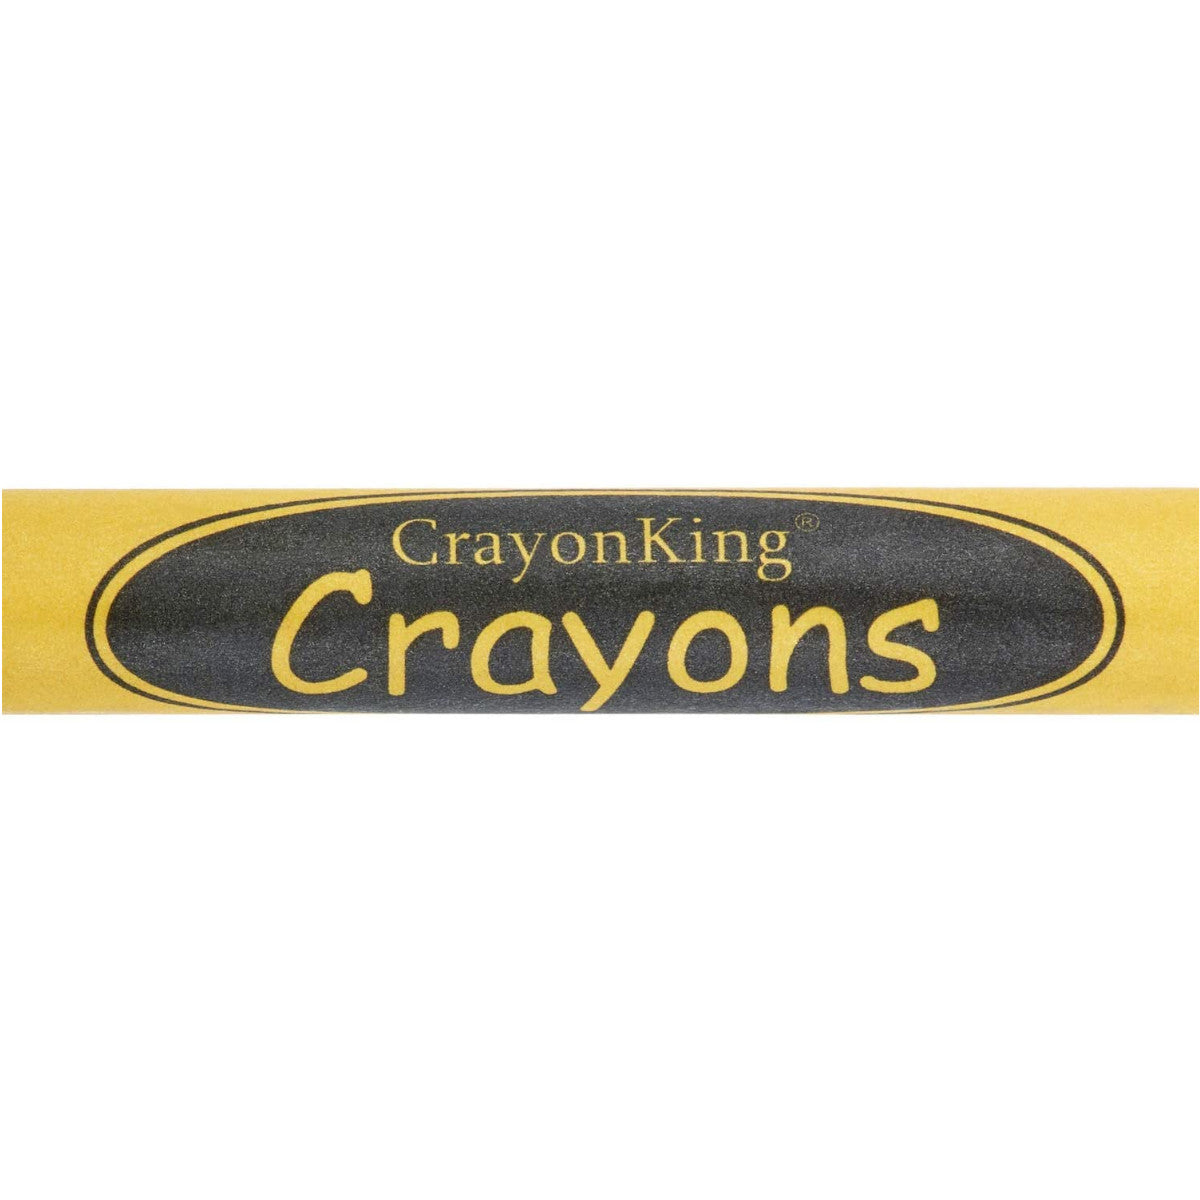  80 Bulk Jumbo Crayons - 20 Individually Packaged 4